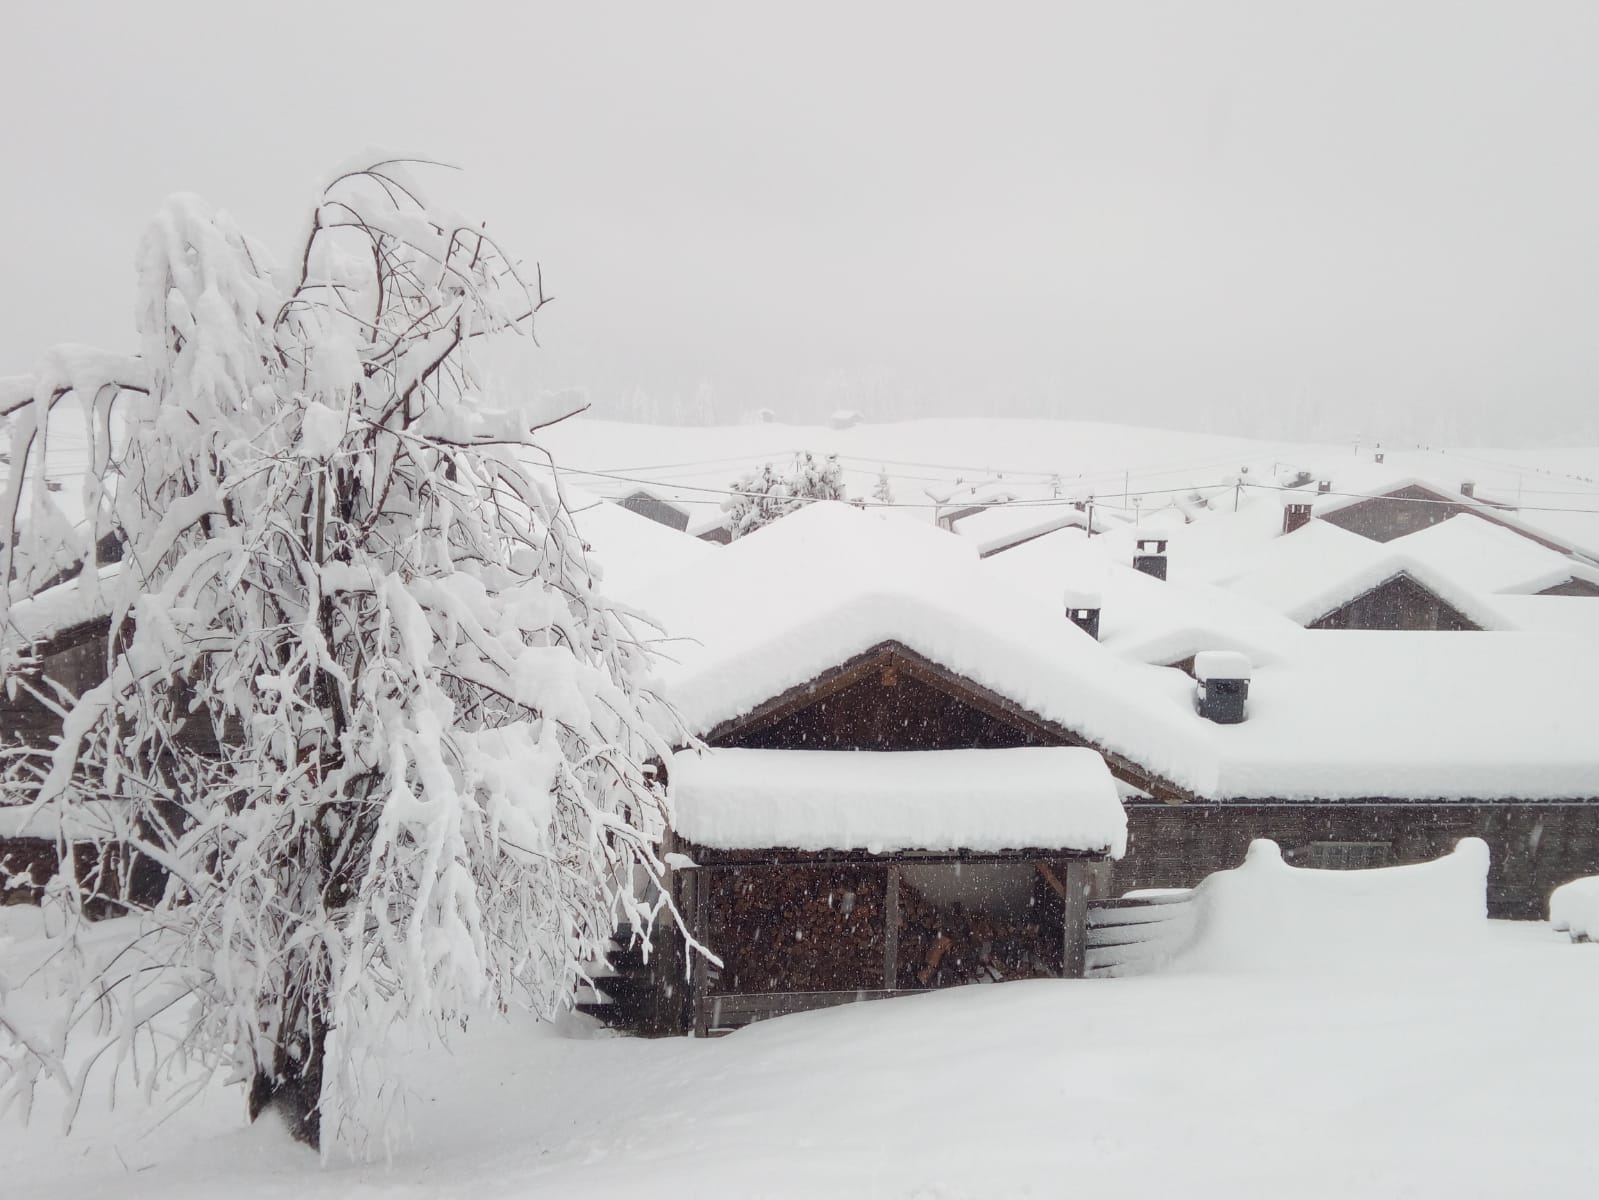 Tavaly novemberi havazás a Lesach völgy karintiai oldalán - Fotó: Jan Salcher/Bergrettung